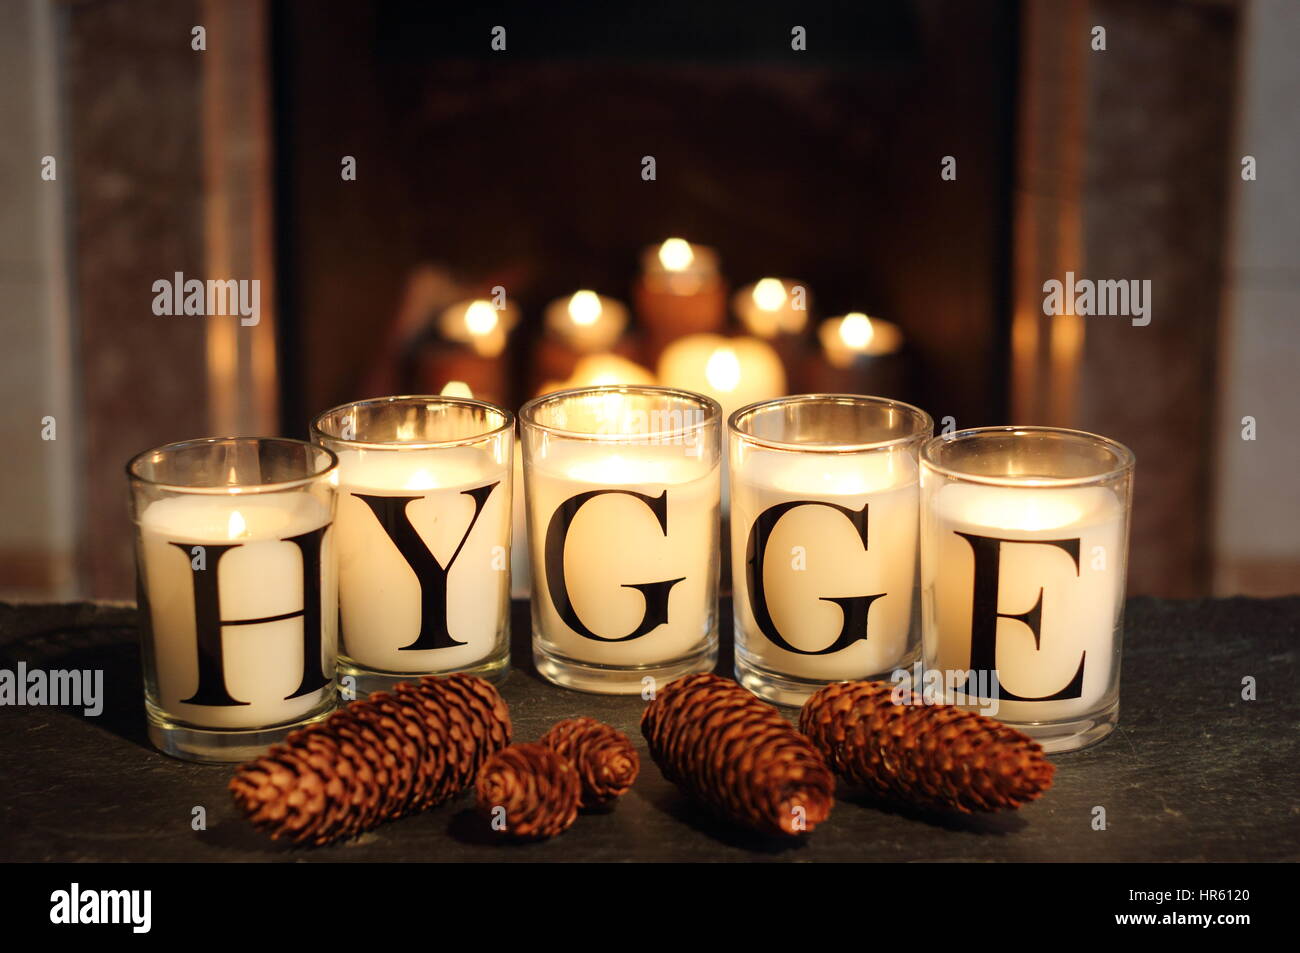 Fireside candele in un inglese home inverno raffigurano "hygge' - il concetto danese di abbracciando accoglienti appagamento e convivialità Foto Stock